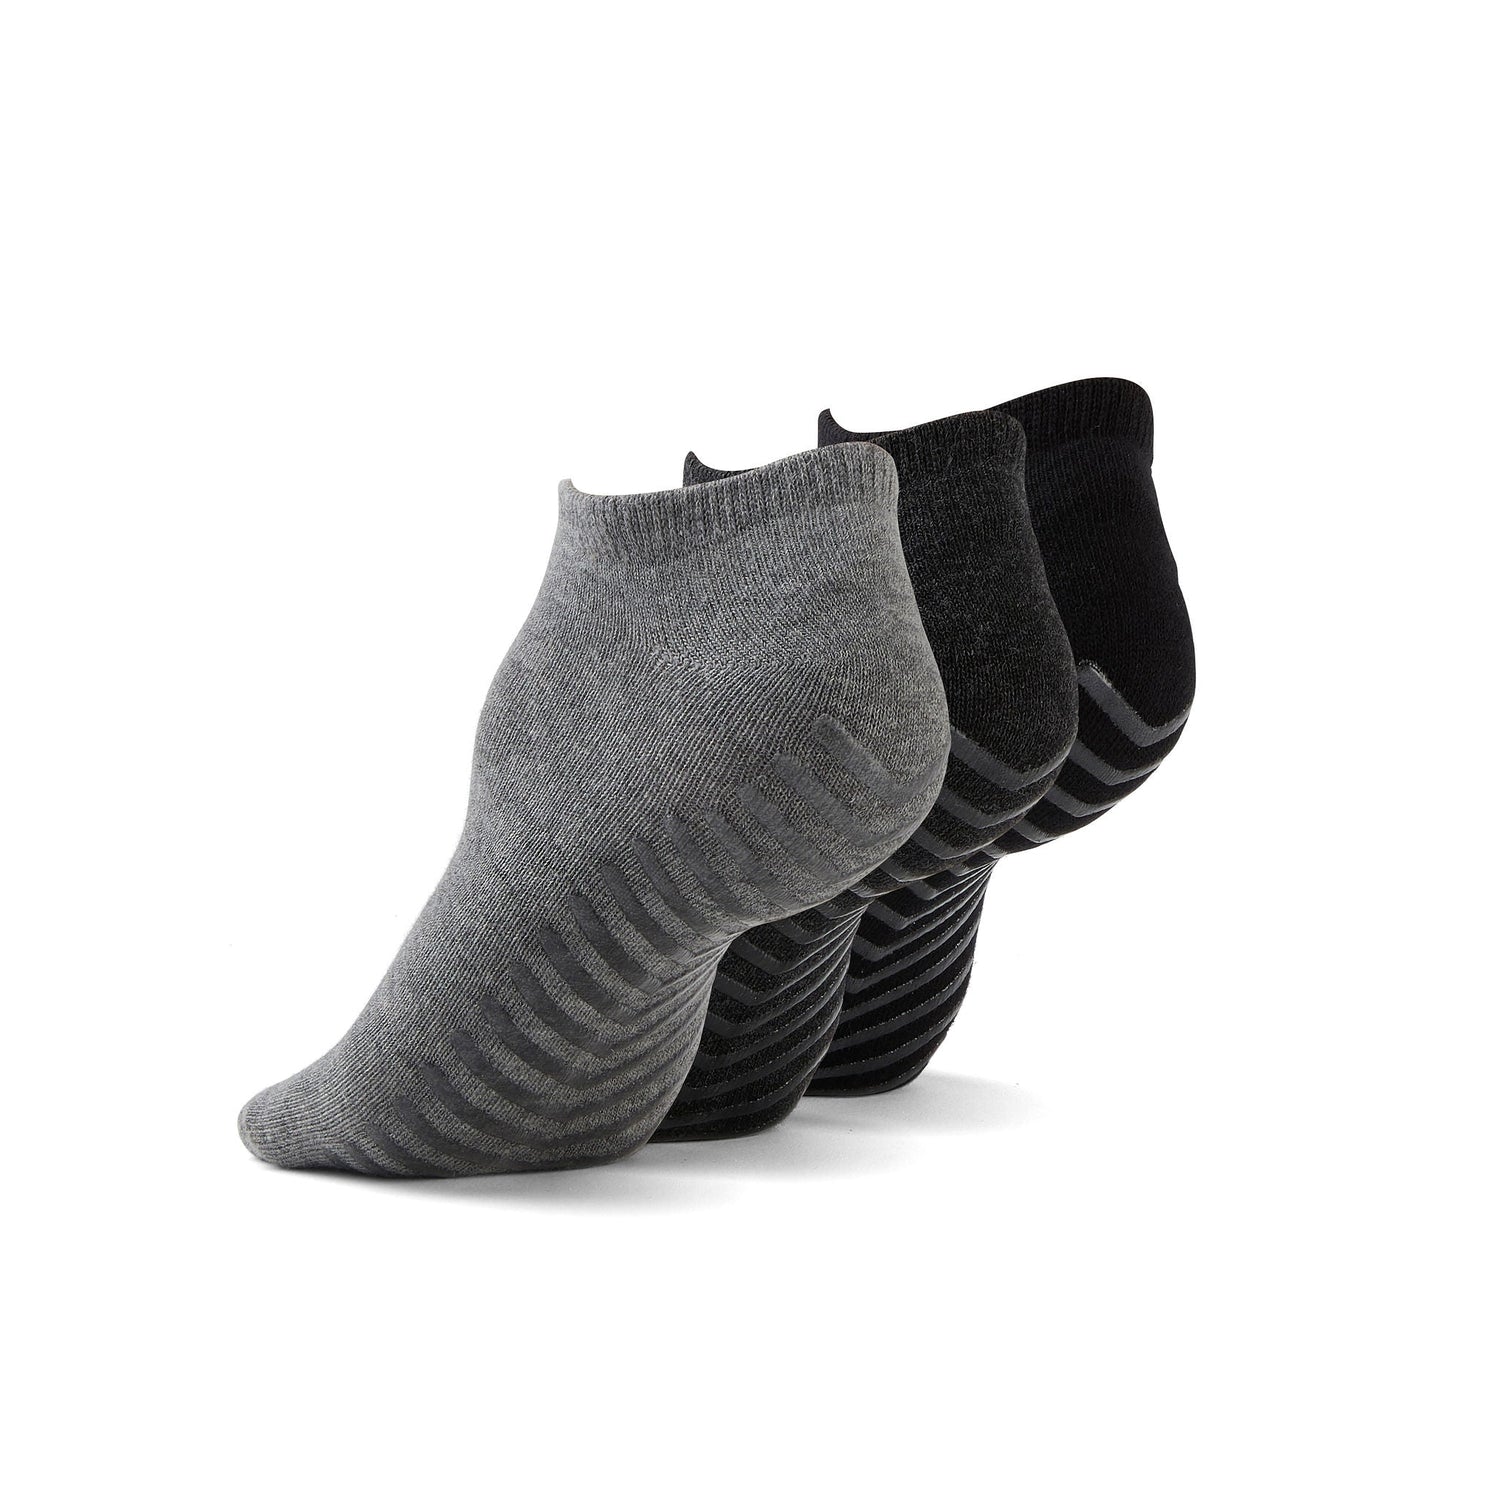 Gripjoy Grip Socks Non Slip Socks for Women Men - Non Skid Hospital Socks –  3 pk : : Clothing, Shoes & Accessories